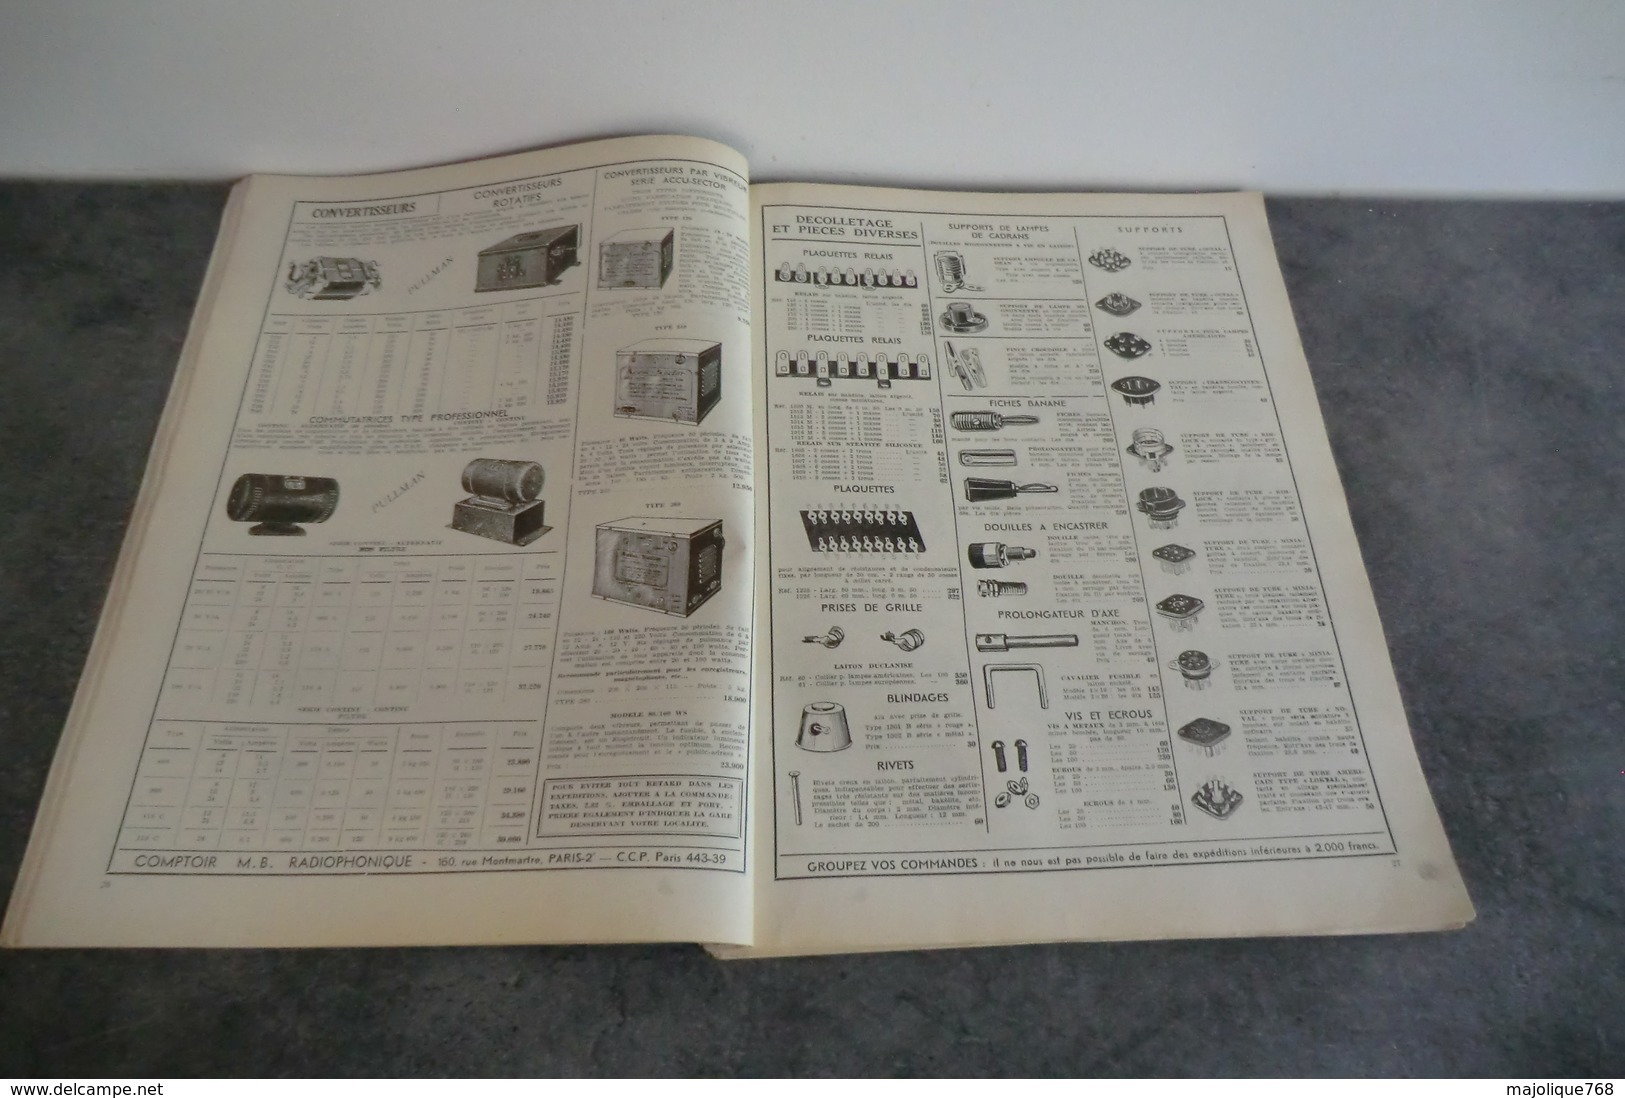 Comptoir M B Radiophonique Présente Son Nouveau Catalogue Générale - Année 1950 - La Couverture Au Verso Se Détache - - Componentes